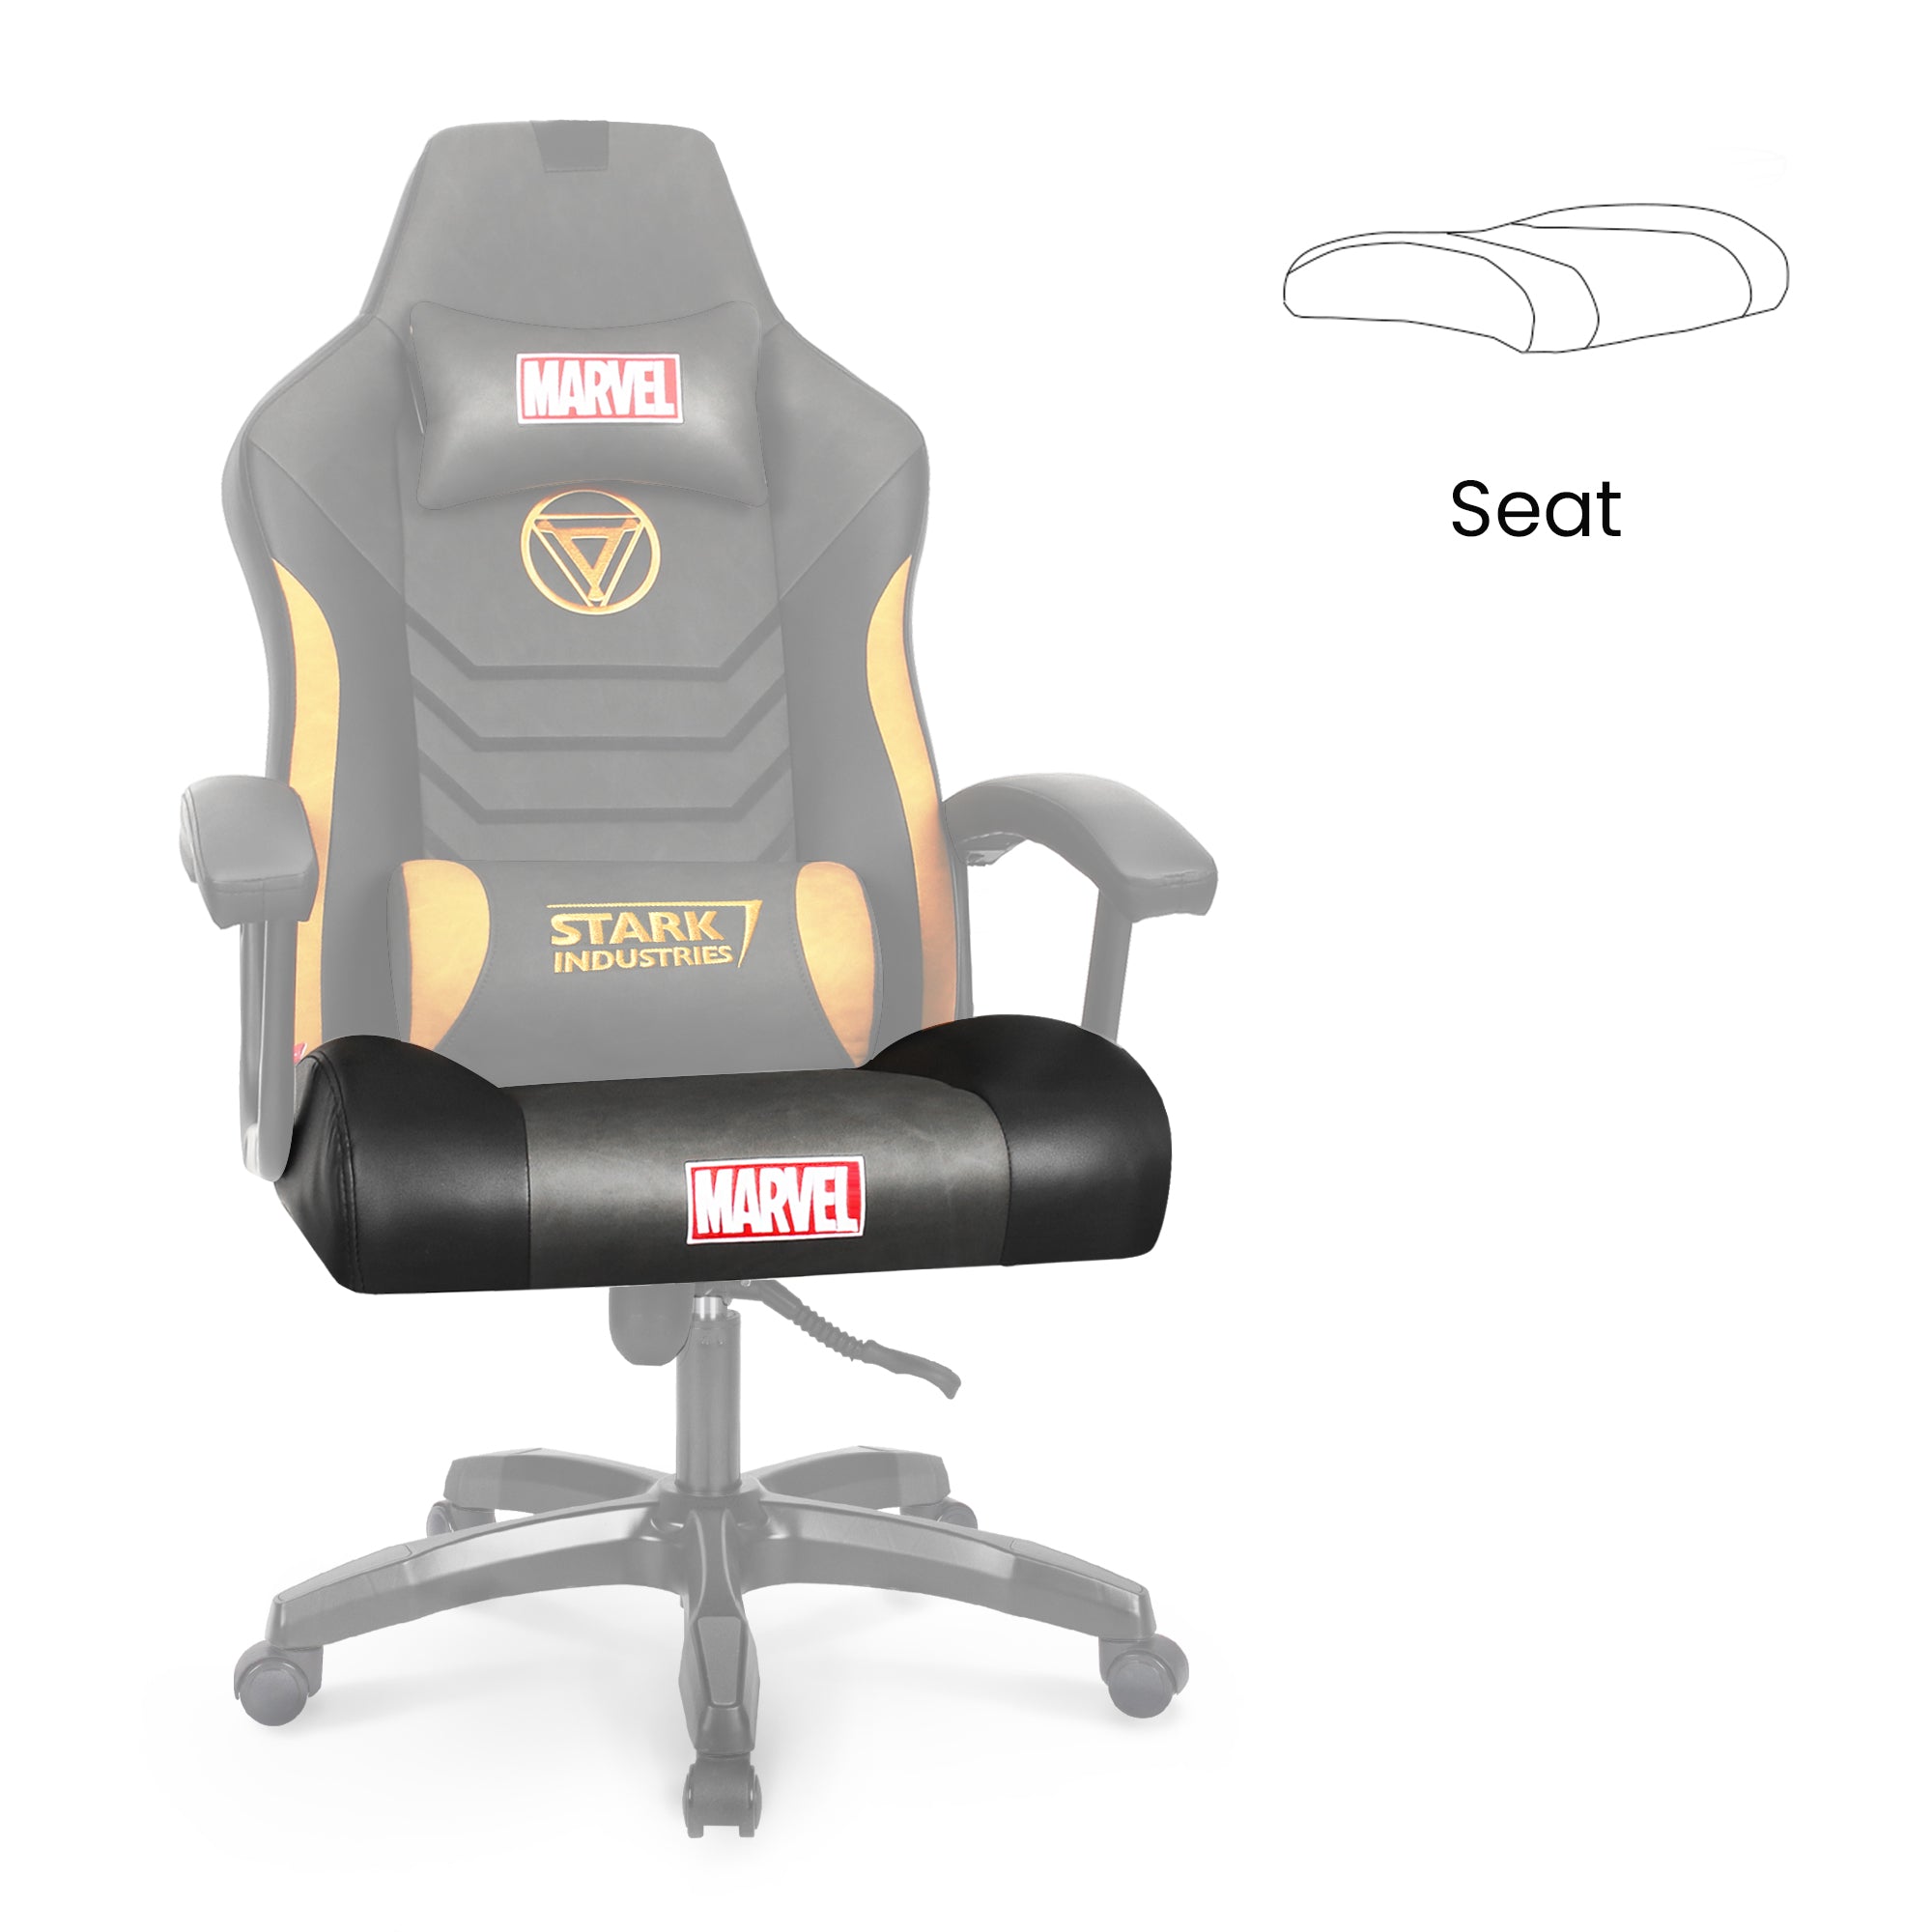 [part] CRC Seat